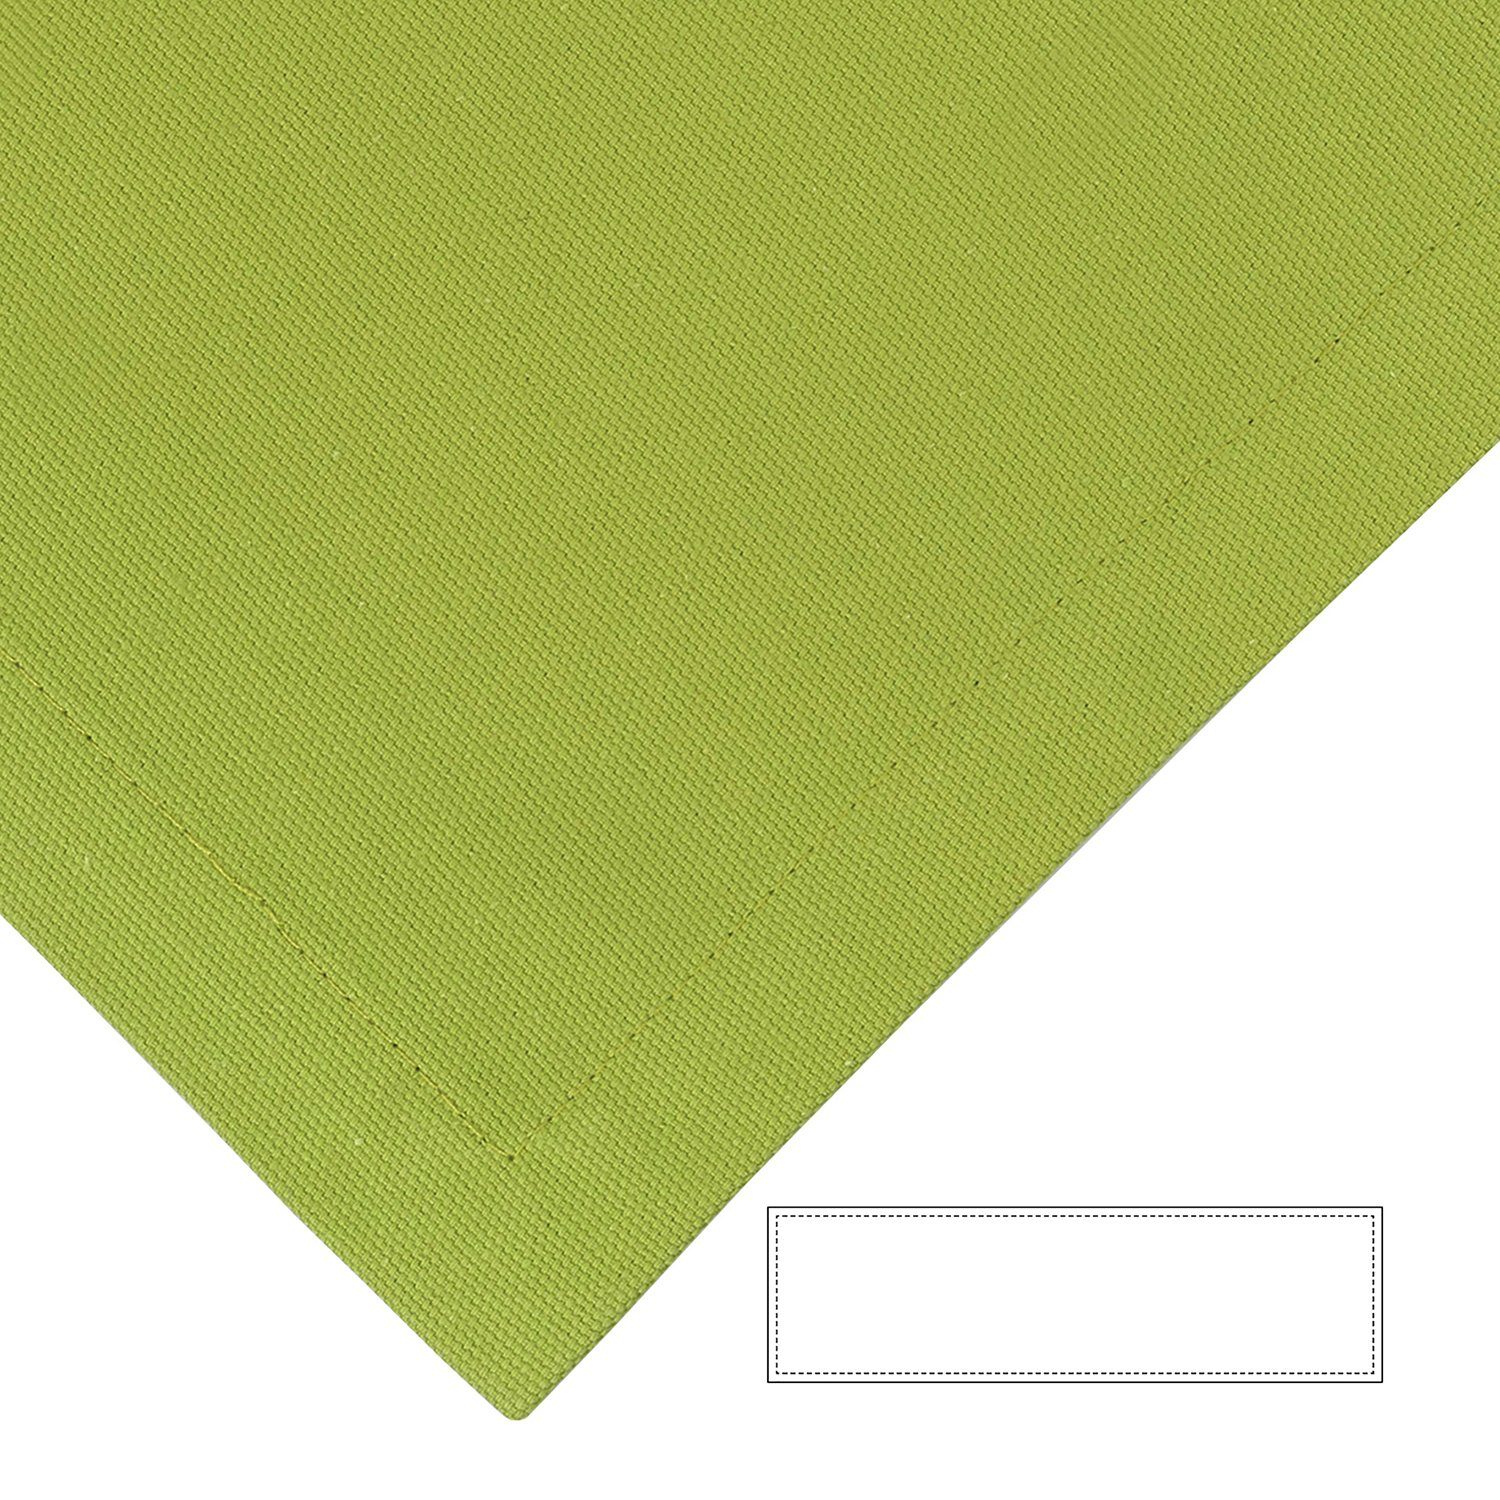 Fink Tischläufer Tischläufer Bente - grün - 100% Baumwolle - B.40cm x T.40cm, Tischdeko